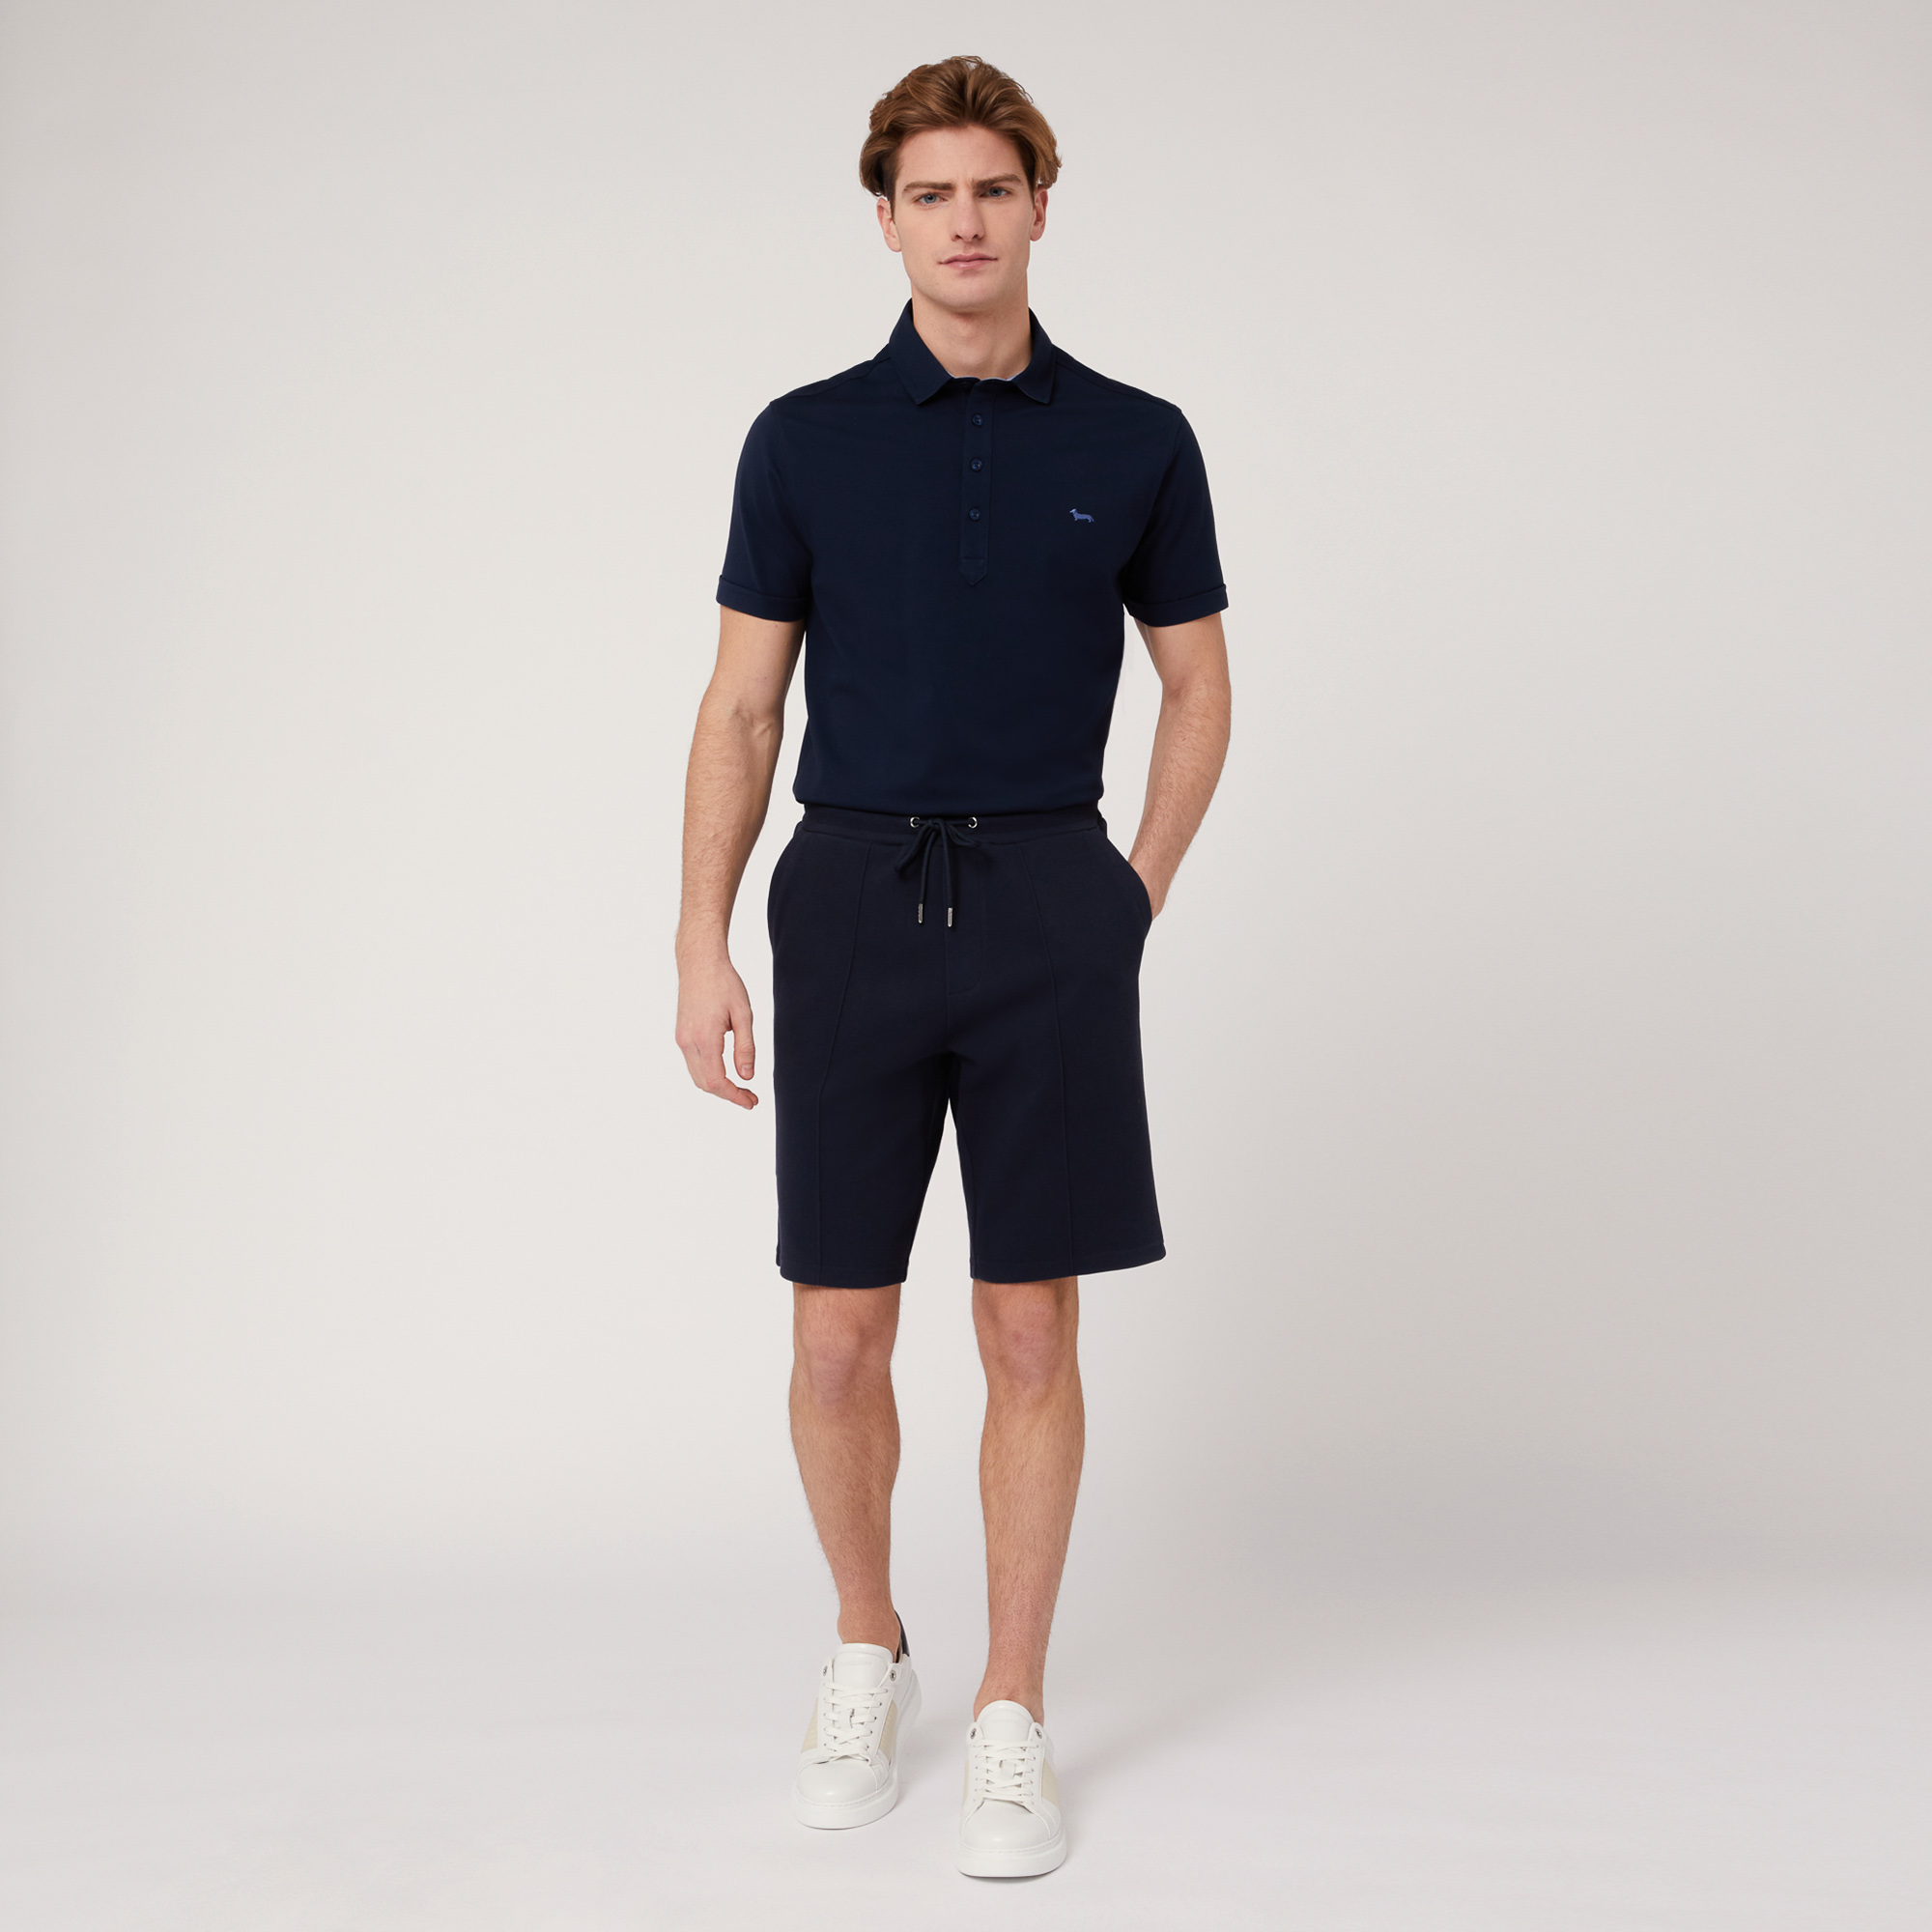 Shorts aus Stretch-Baumwolle mit Tasche hinten, Blau, large image number 3